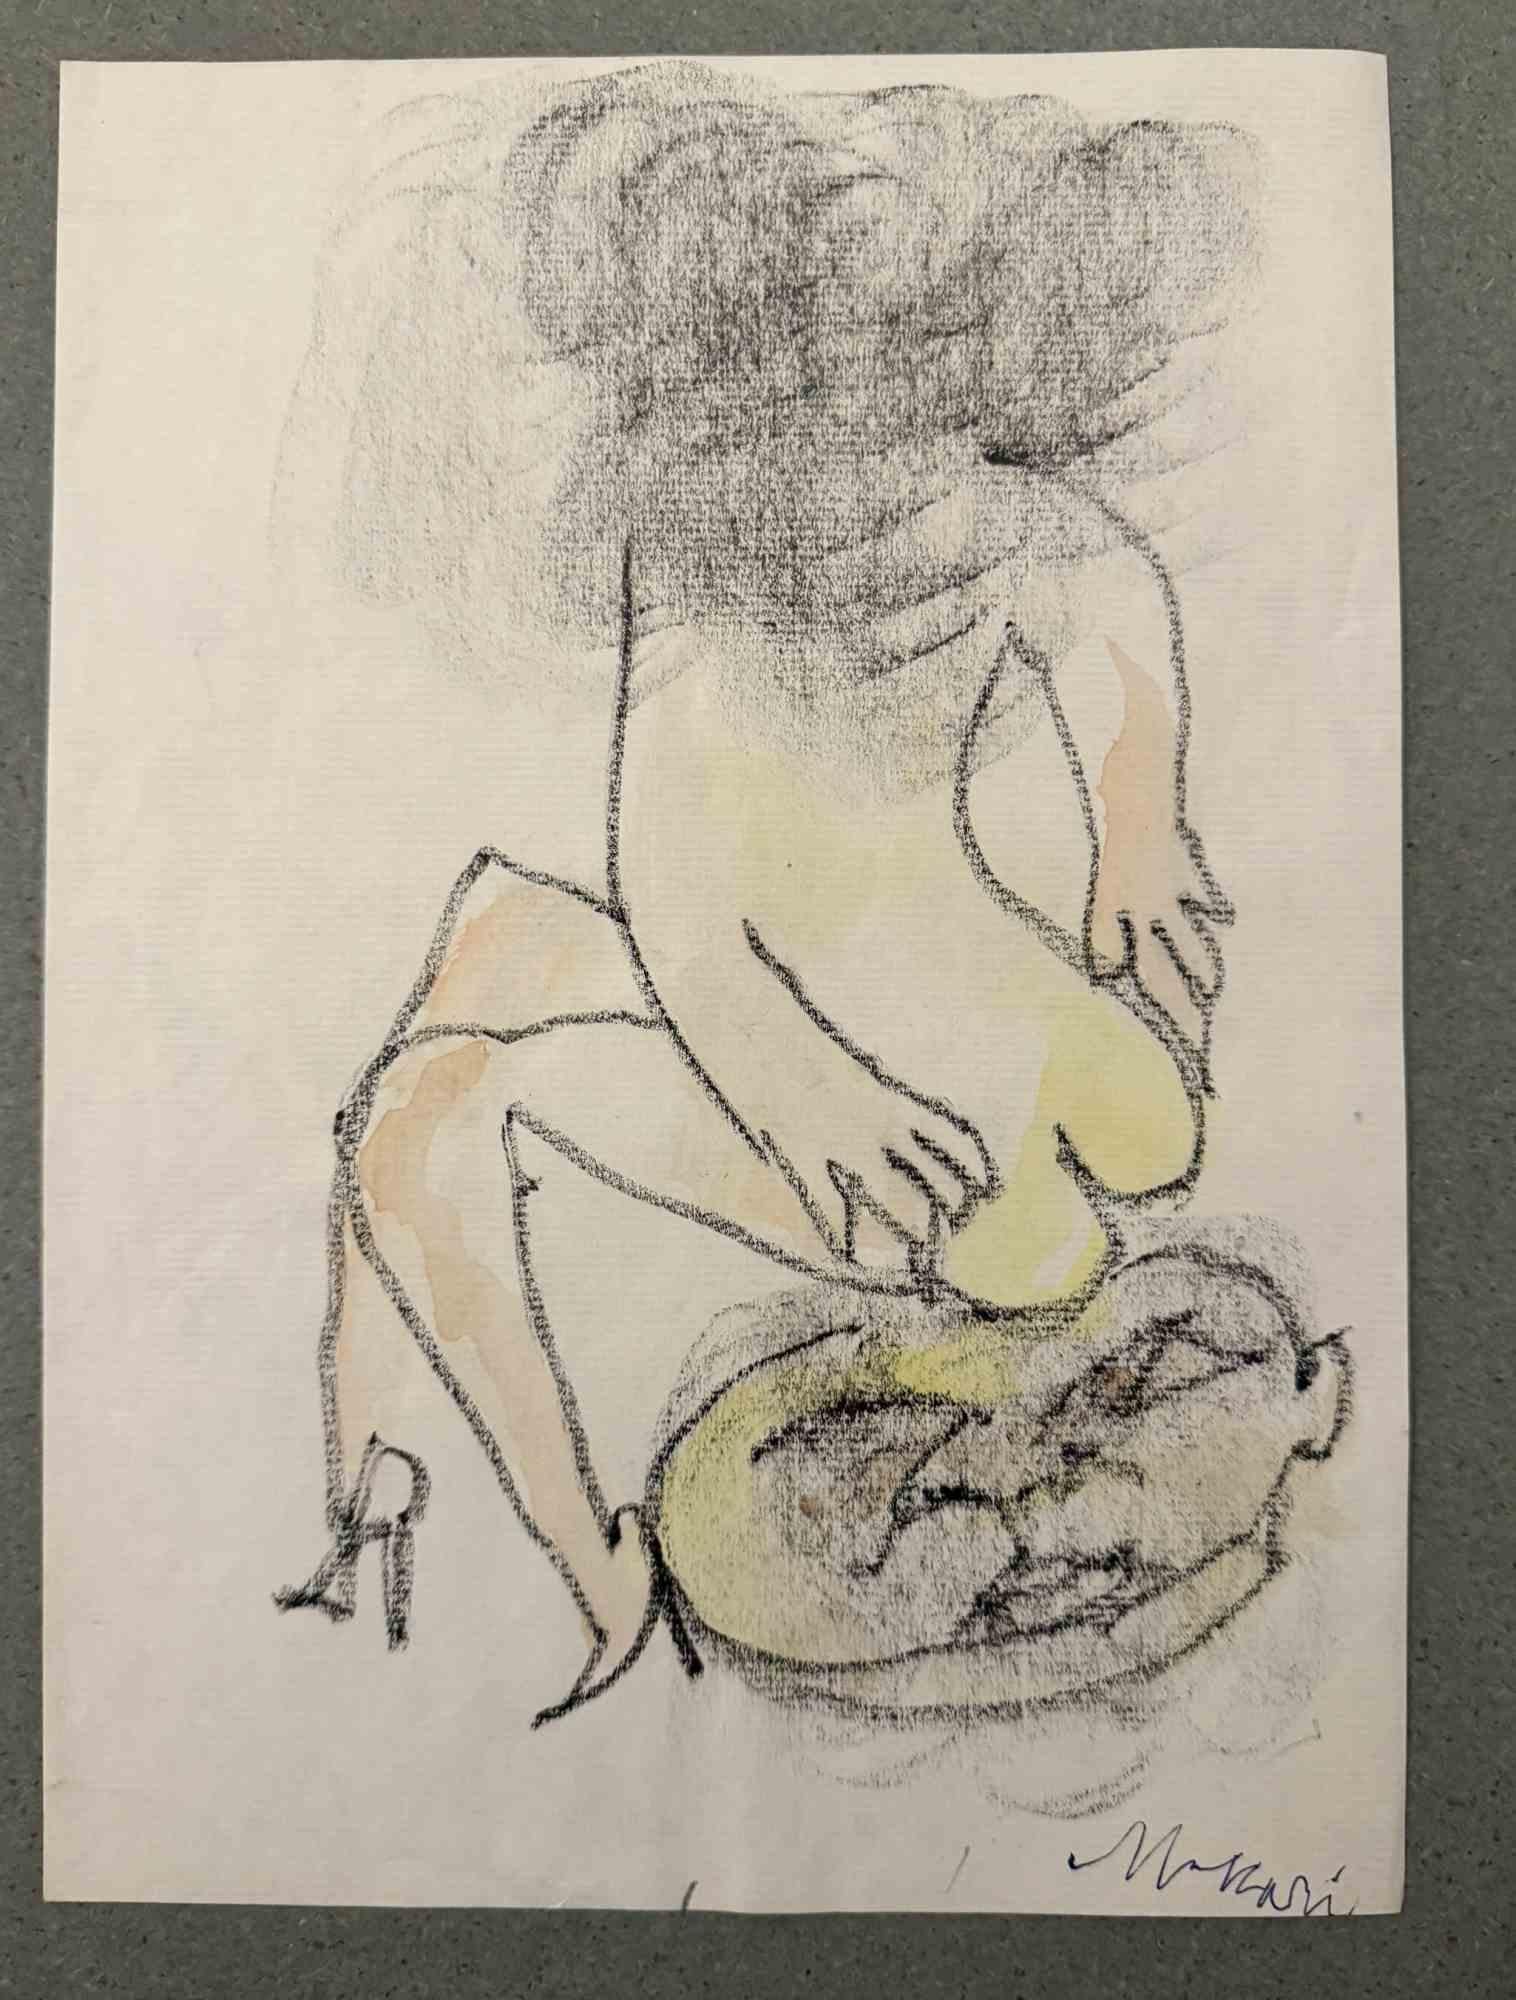 Sitting est un dessin au fusain réalisé par Mino Maccari (1924-1989) au milieu du 20e siècle.

Signé à la main.

Bon état avec de légères rousseurs.

Mino Maccari (Sienne, 1924-Rome, 16 juin 1989) est un écrivain, peintre, graveur et journaliste